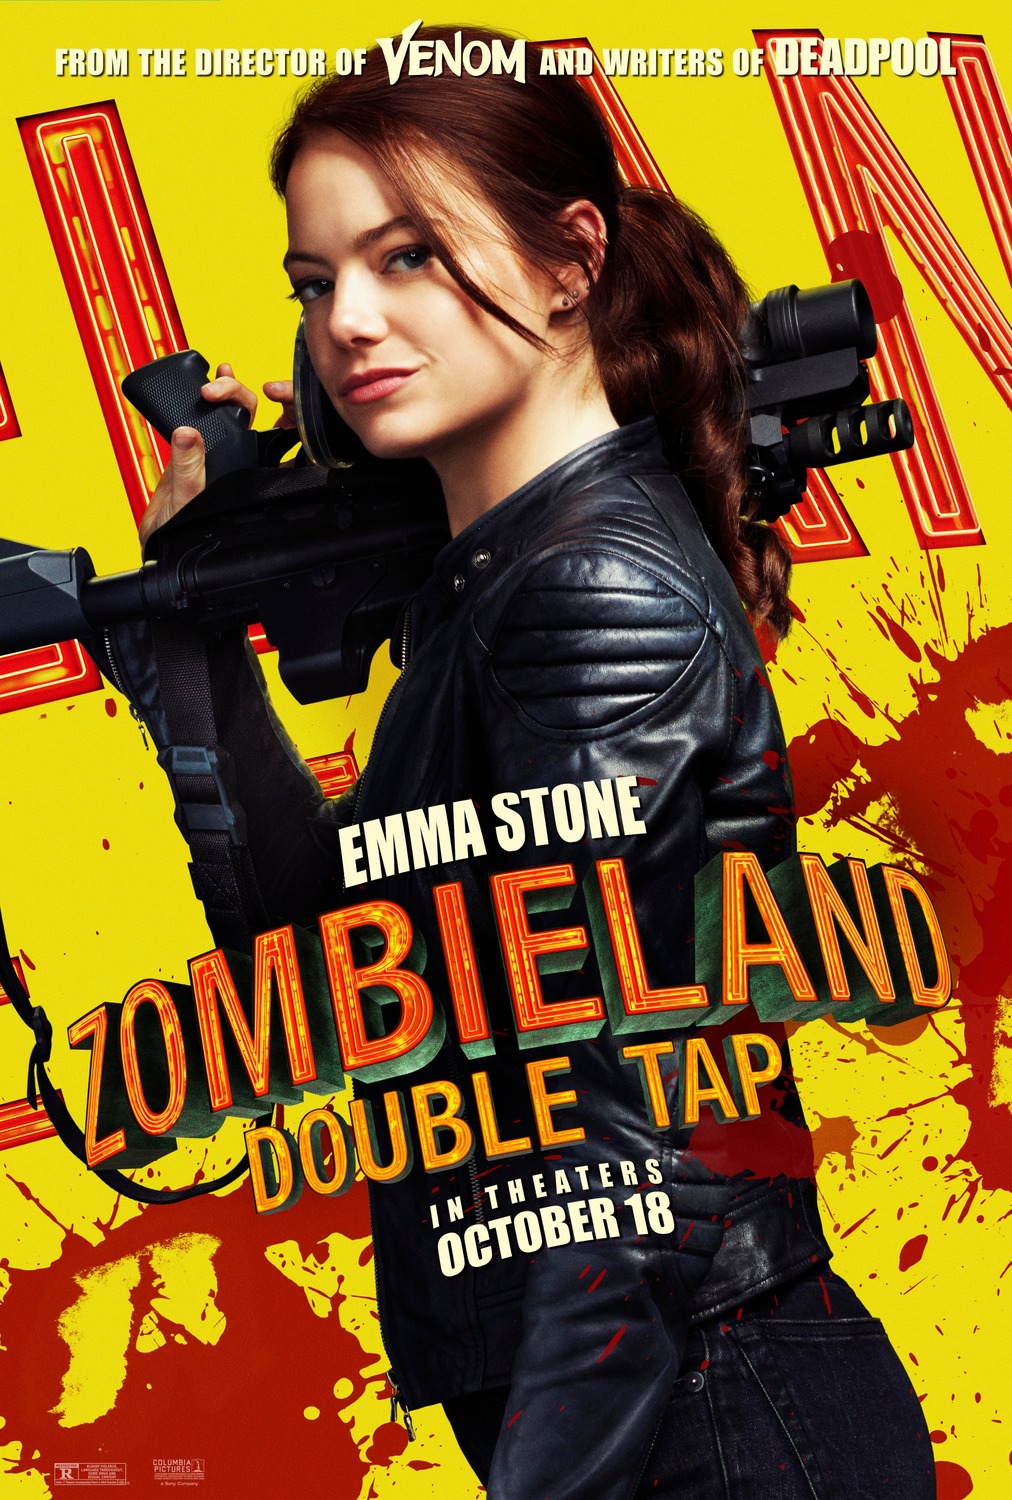 Zombieland 2 Details - Zombieland 2 Will Reunite the Original Cast